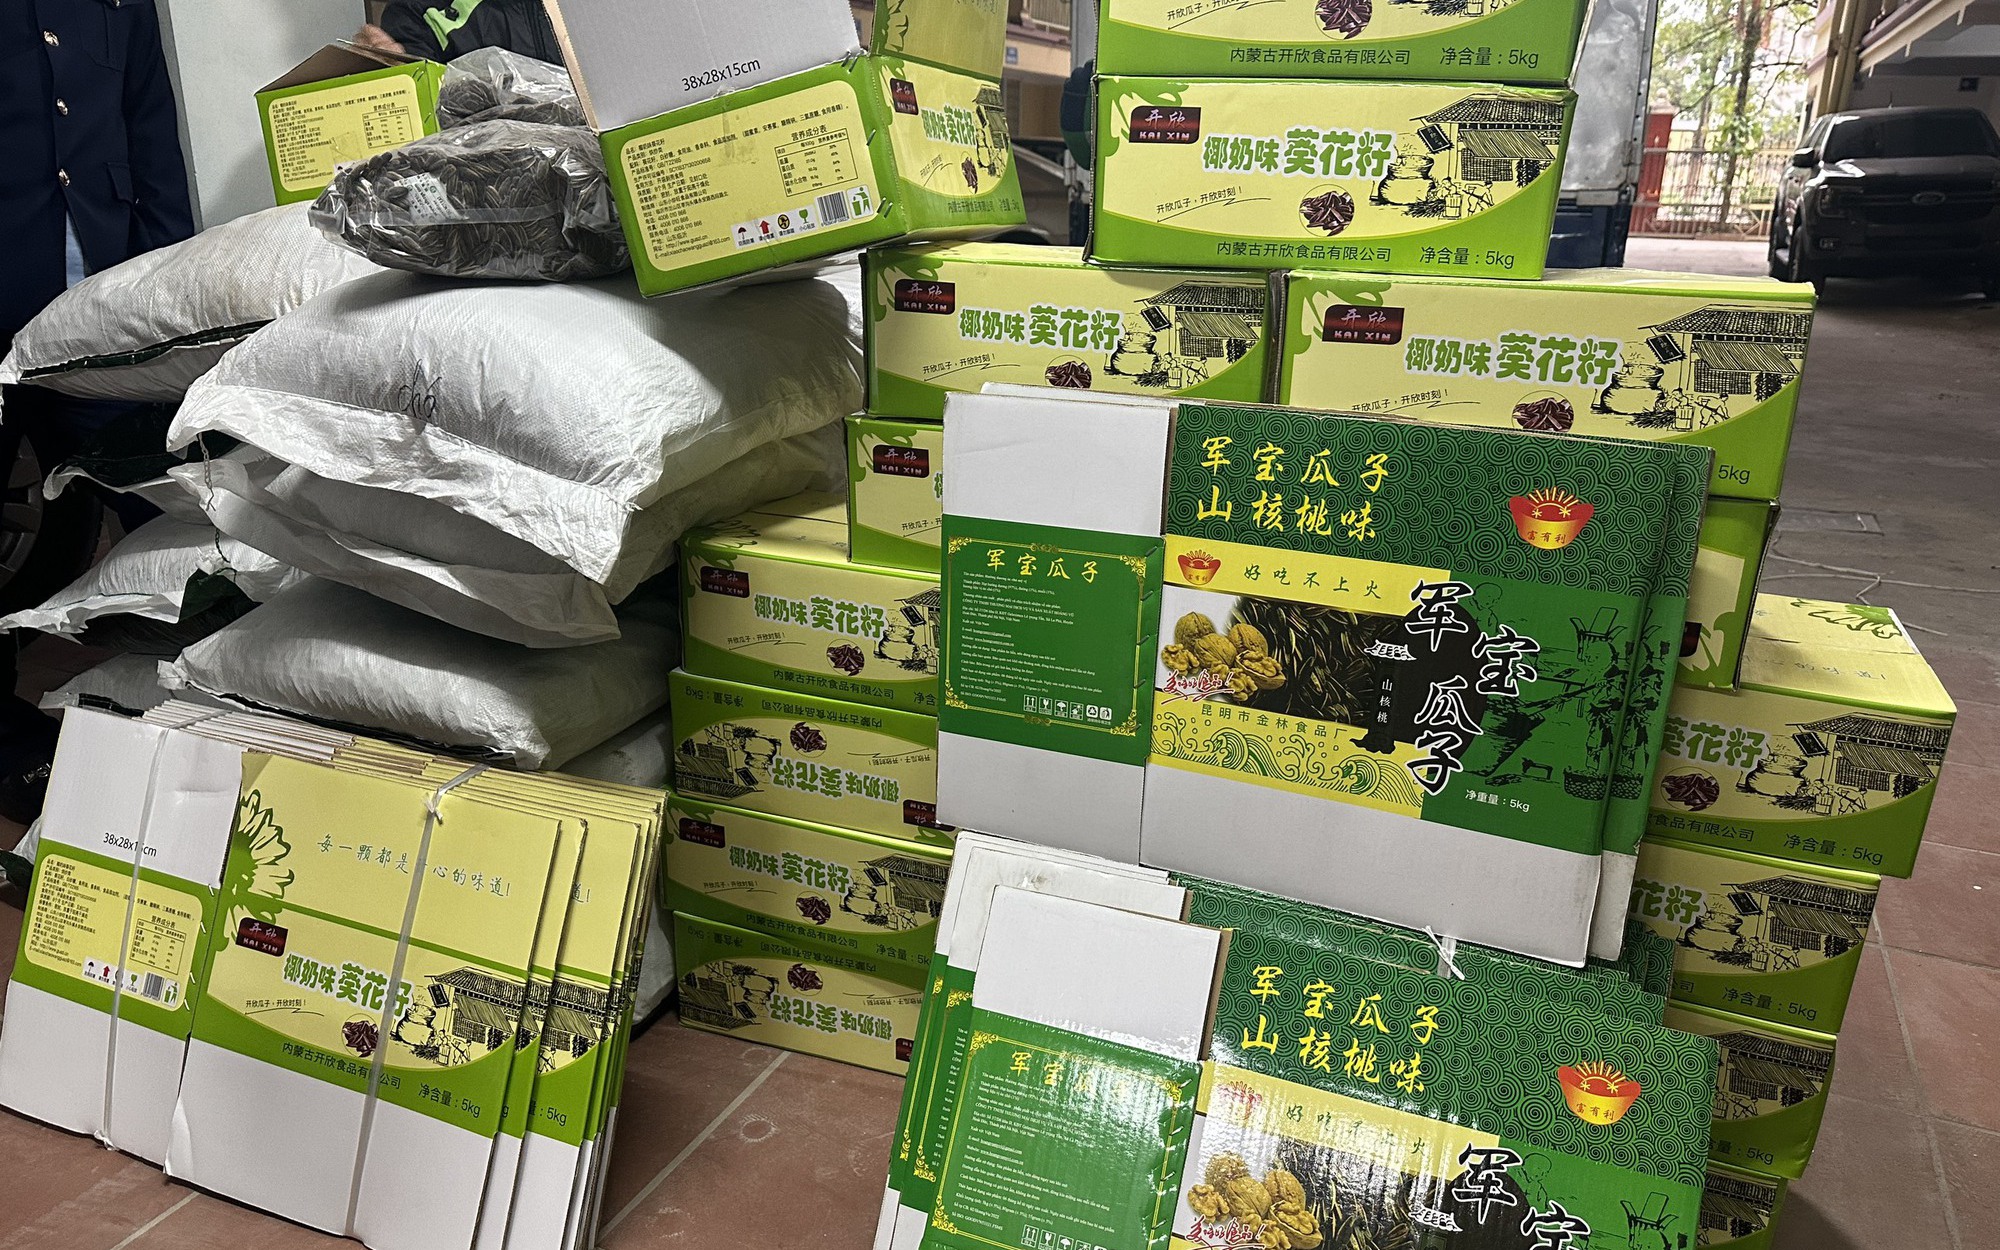 "Tóm gọn" nhiều thùng hướng dương nhập lậu "suýt" được biến hoá thành hàng sản xuất tại Việt Nam